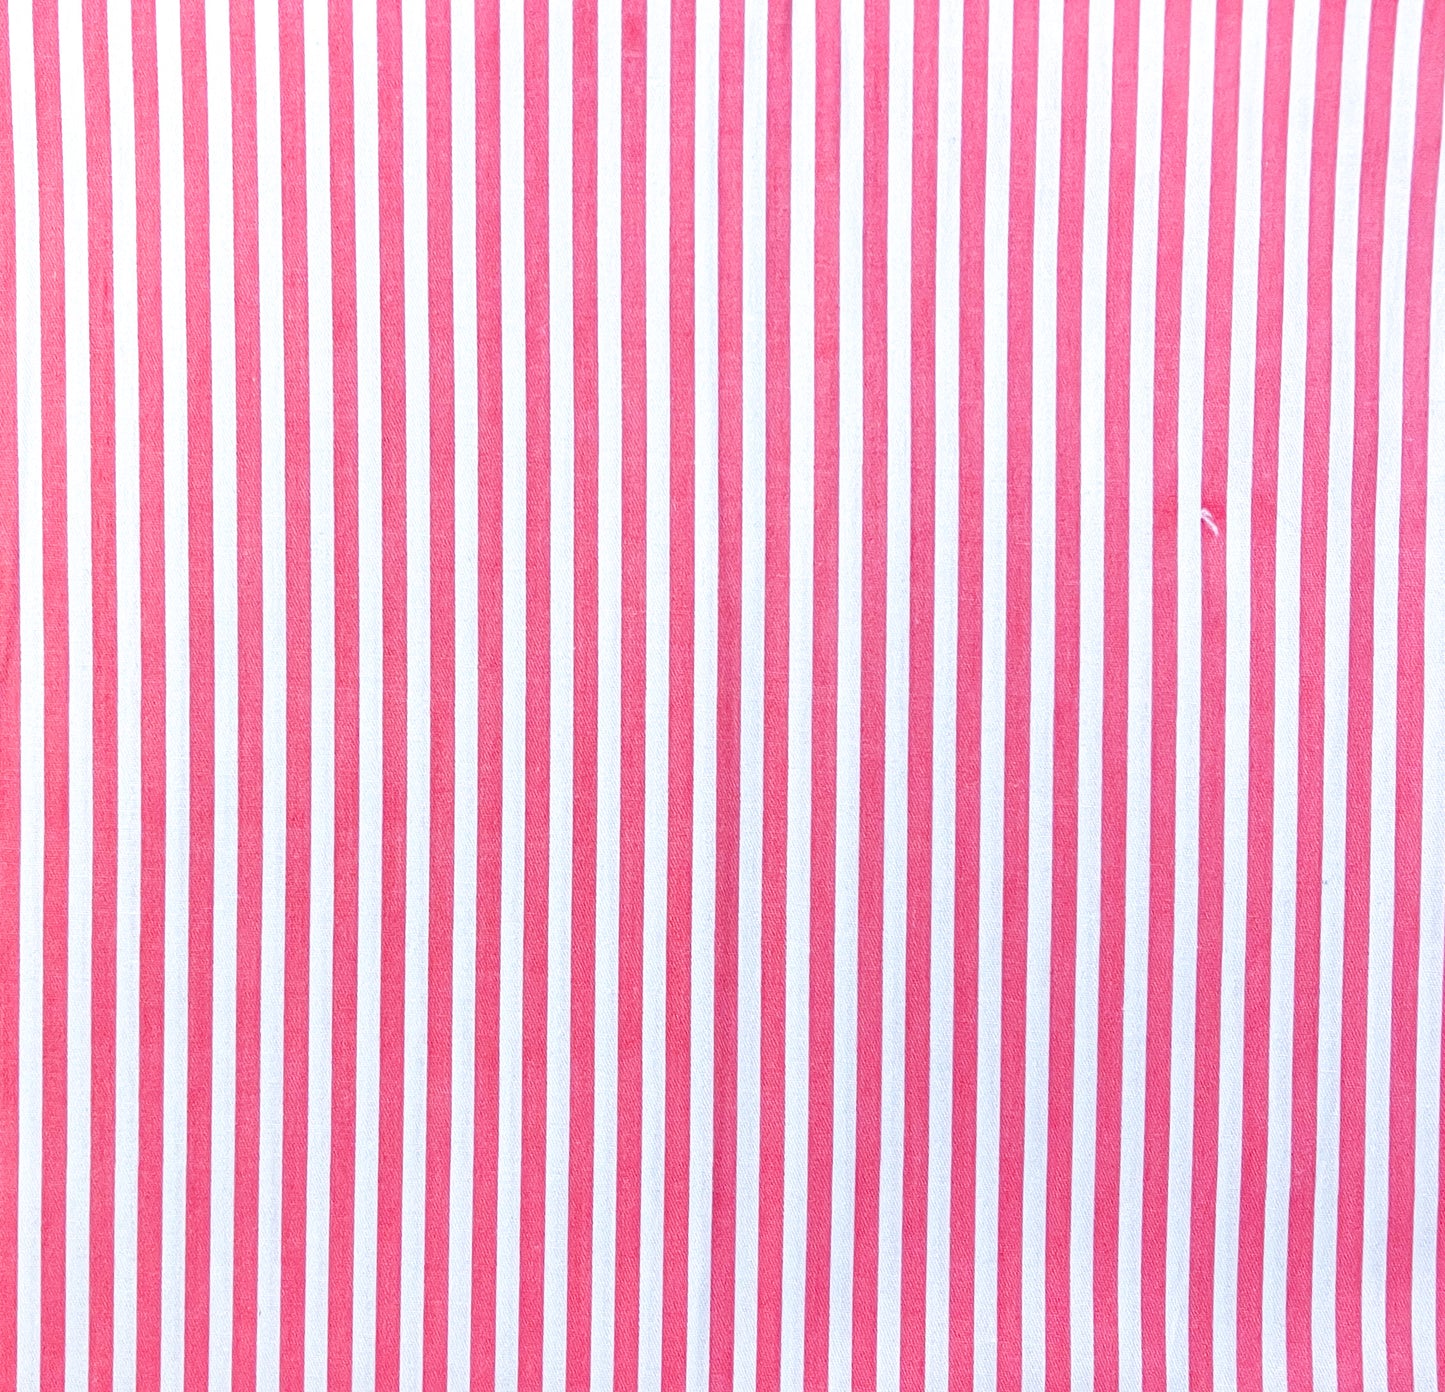 Dark pink stripes